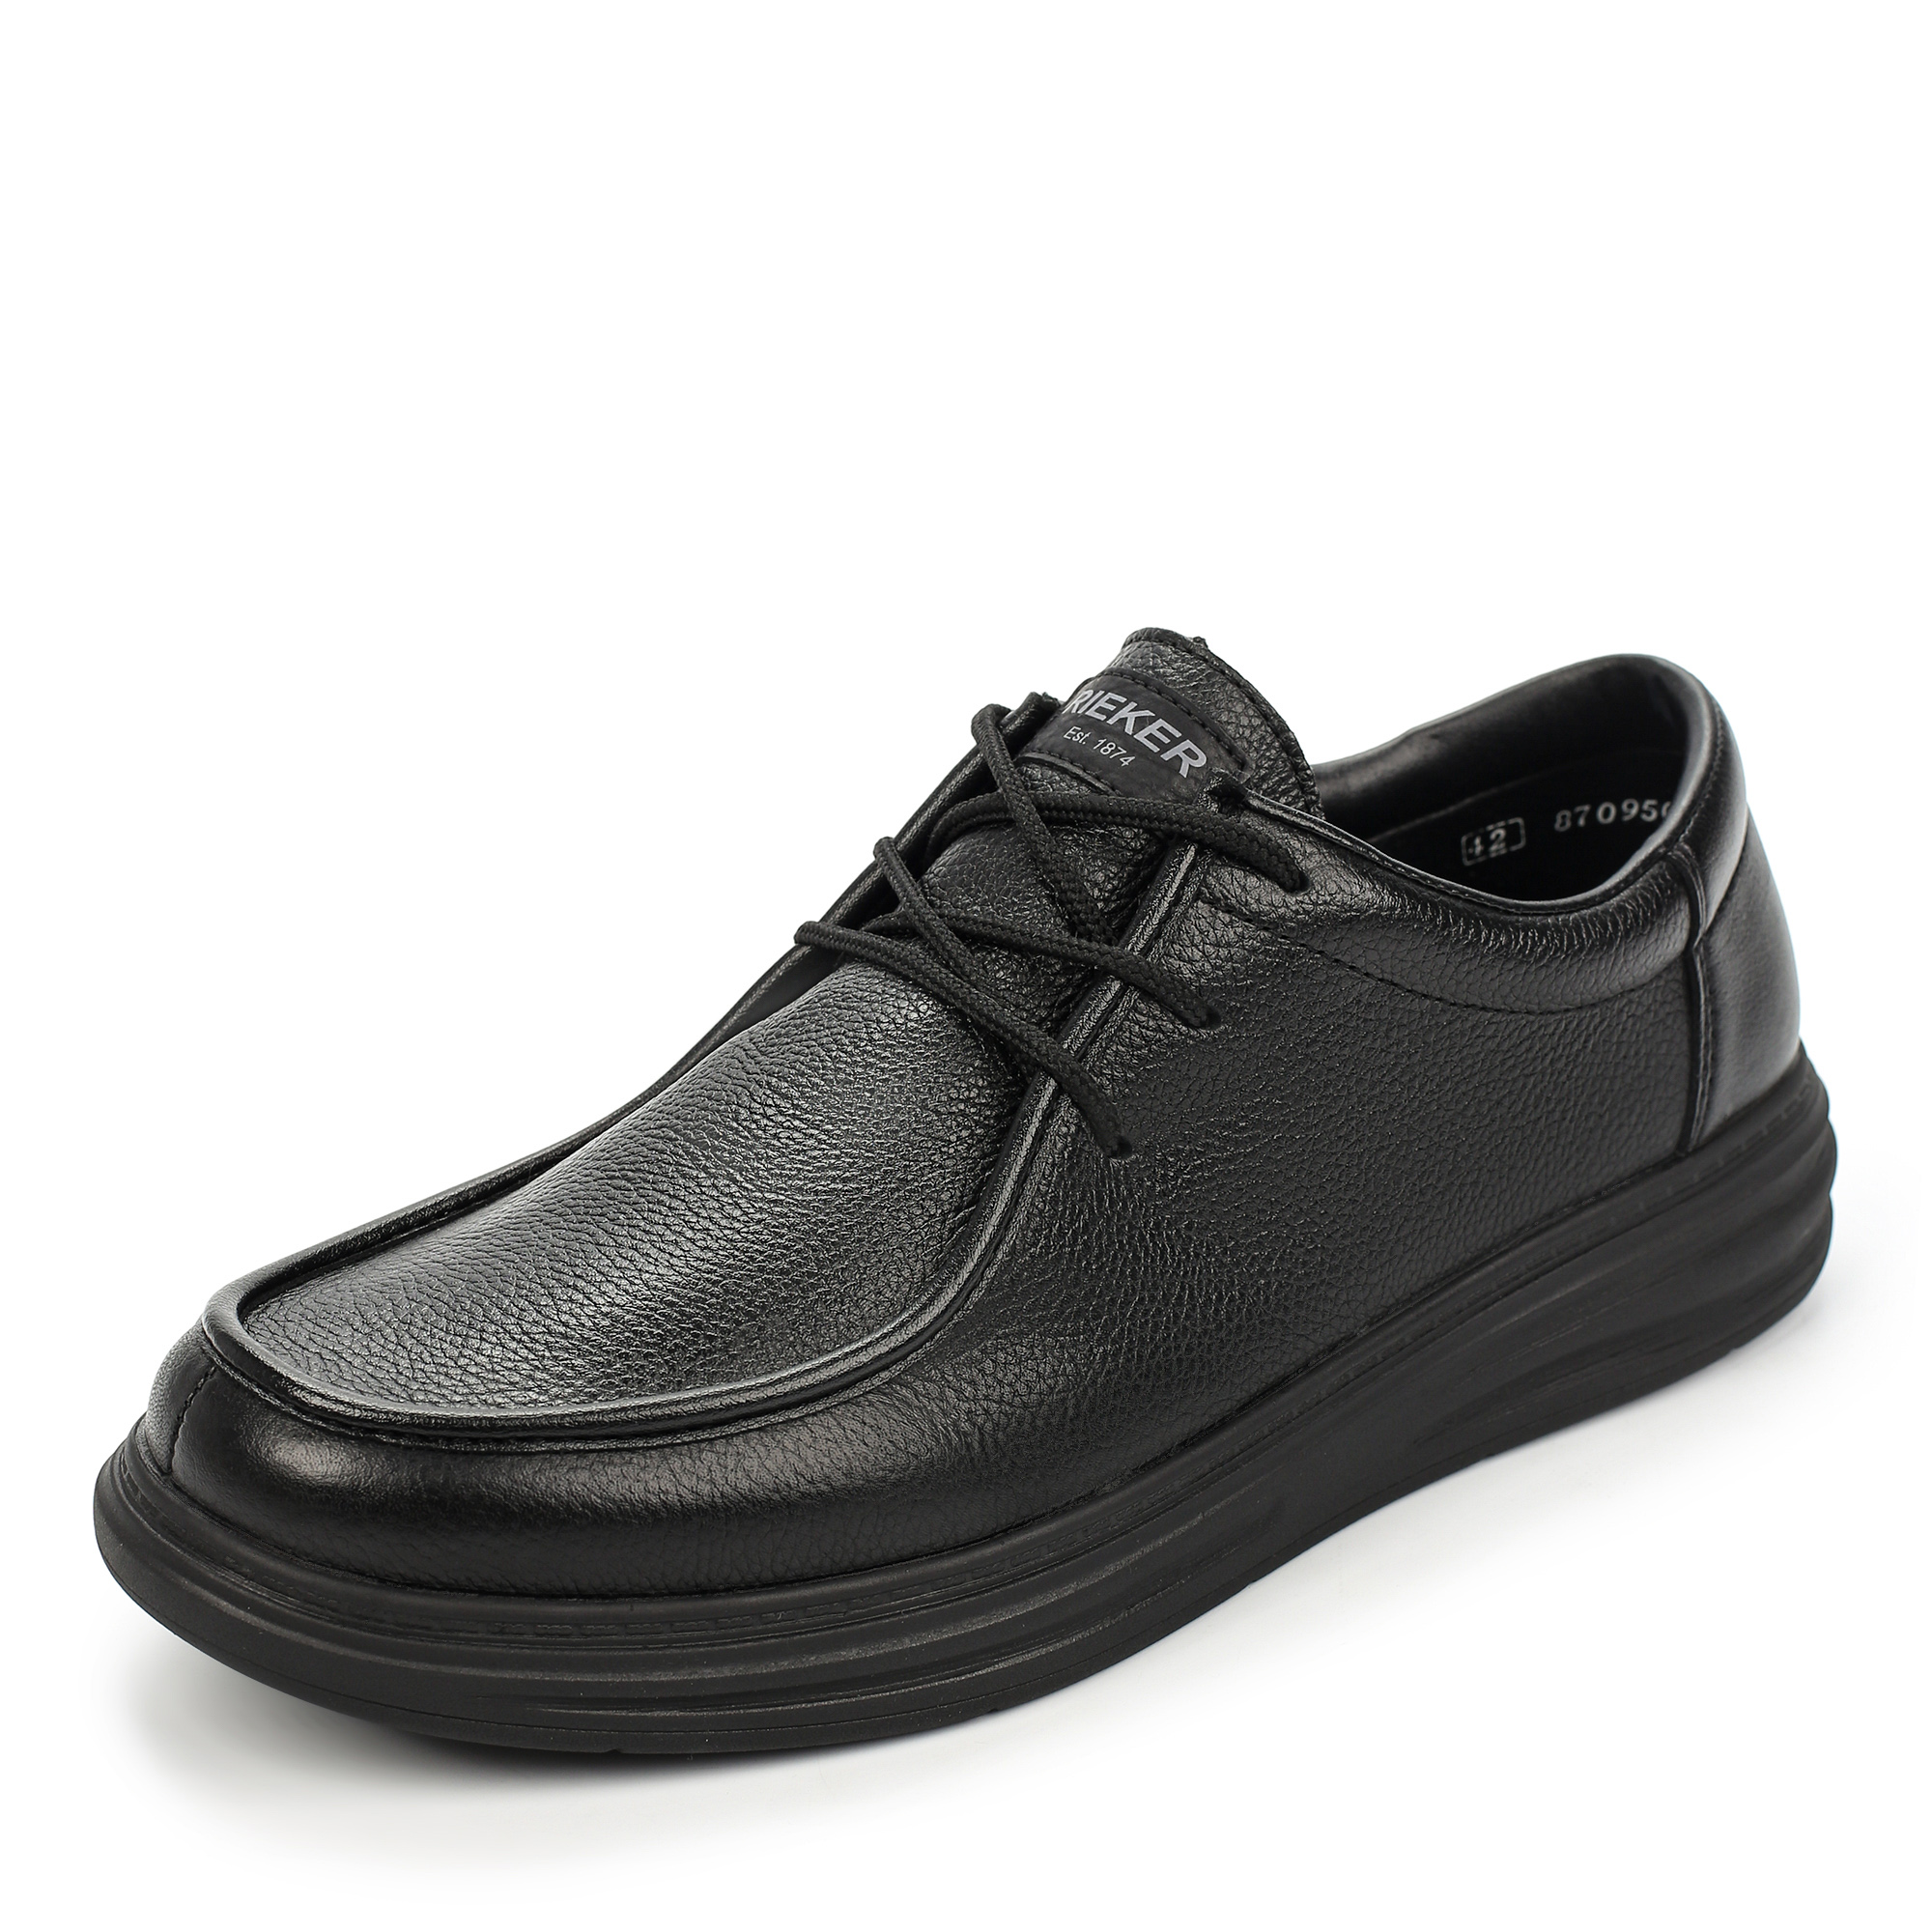 Туфли/полуботинки Rieker B6326-00, цвет черный, размер 41 - фото 2